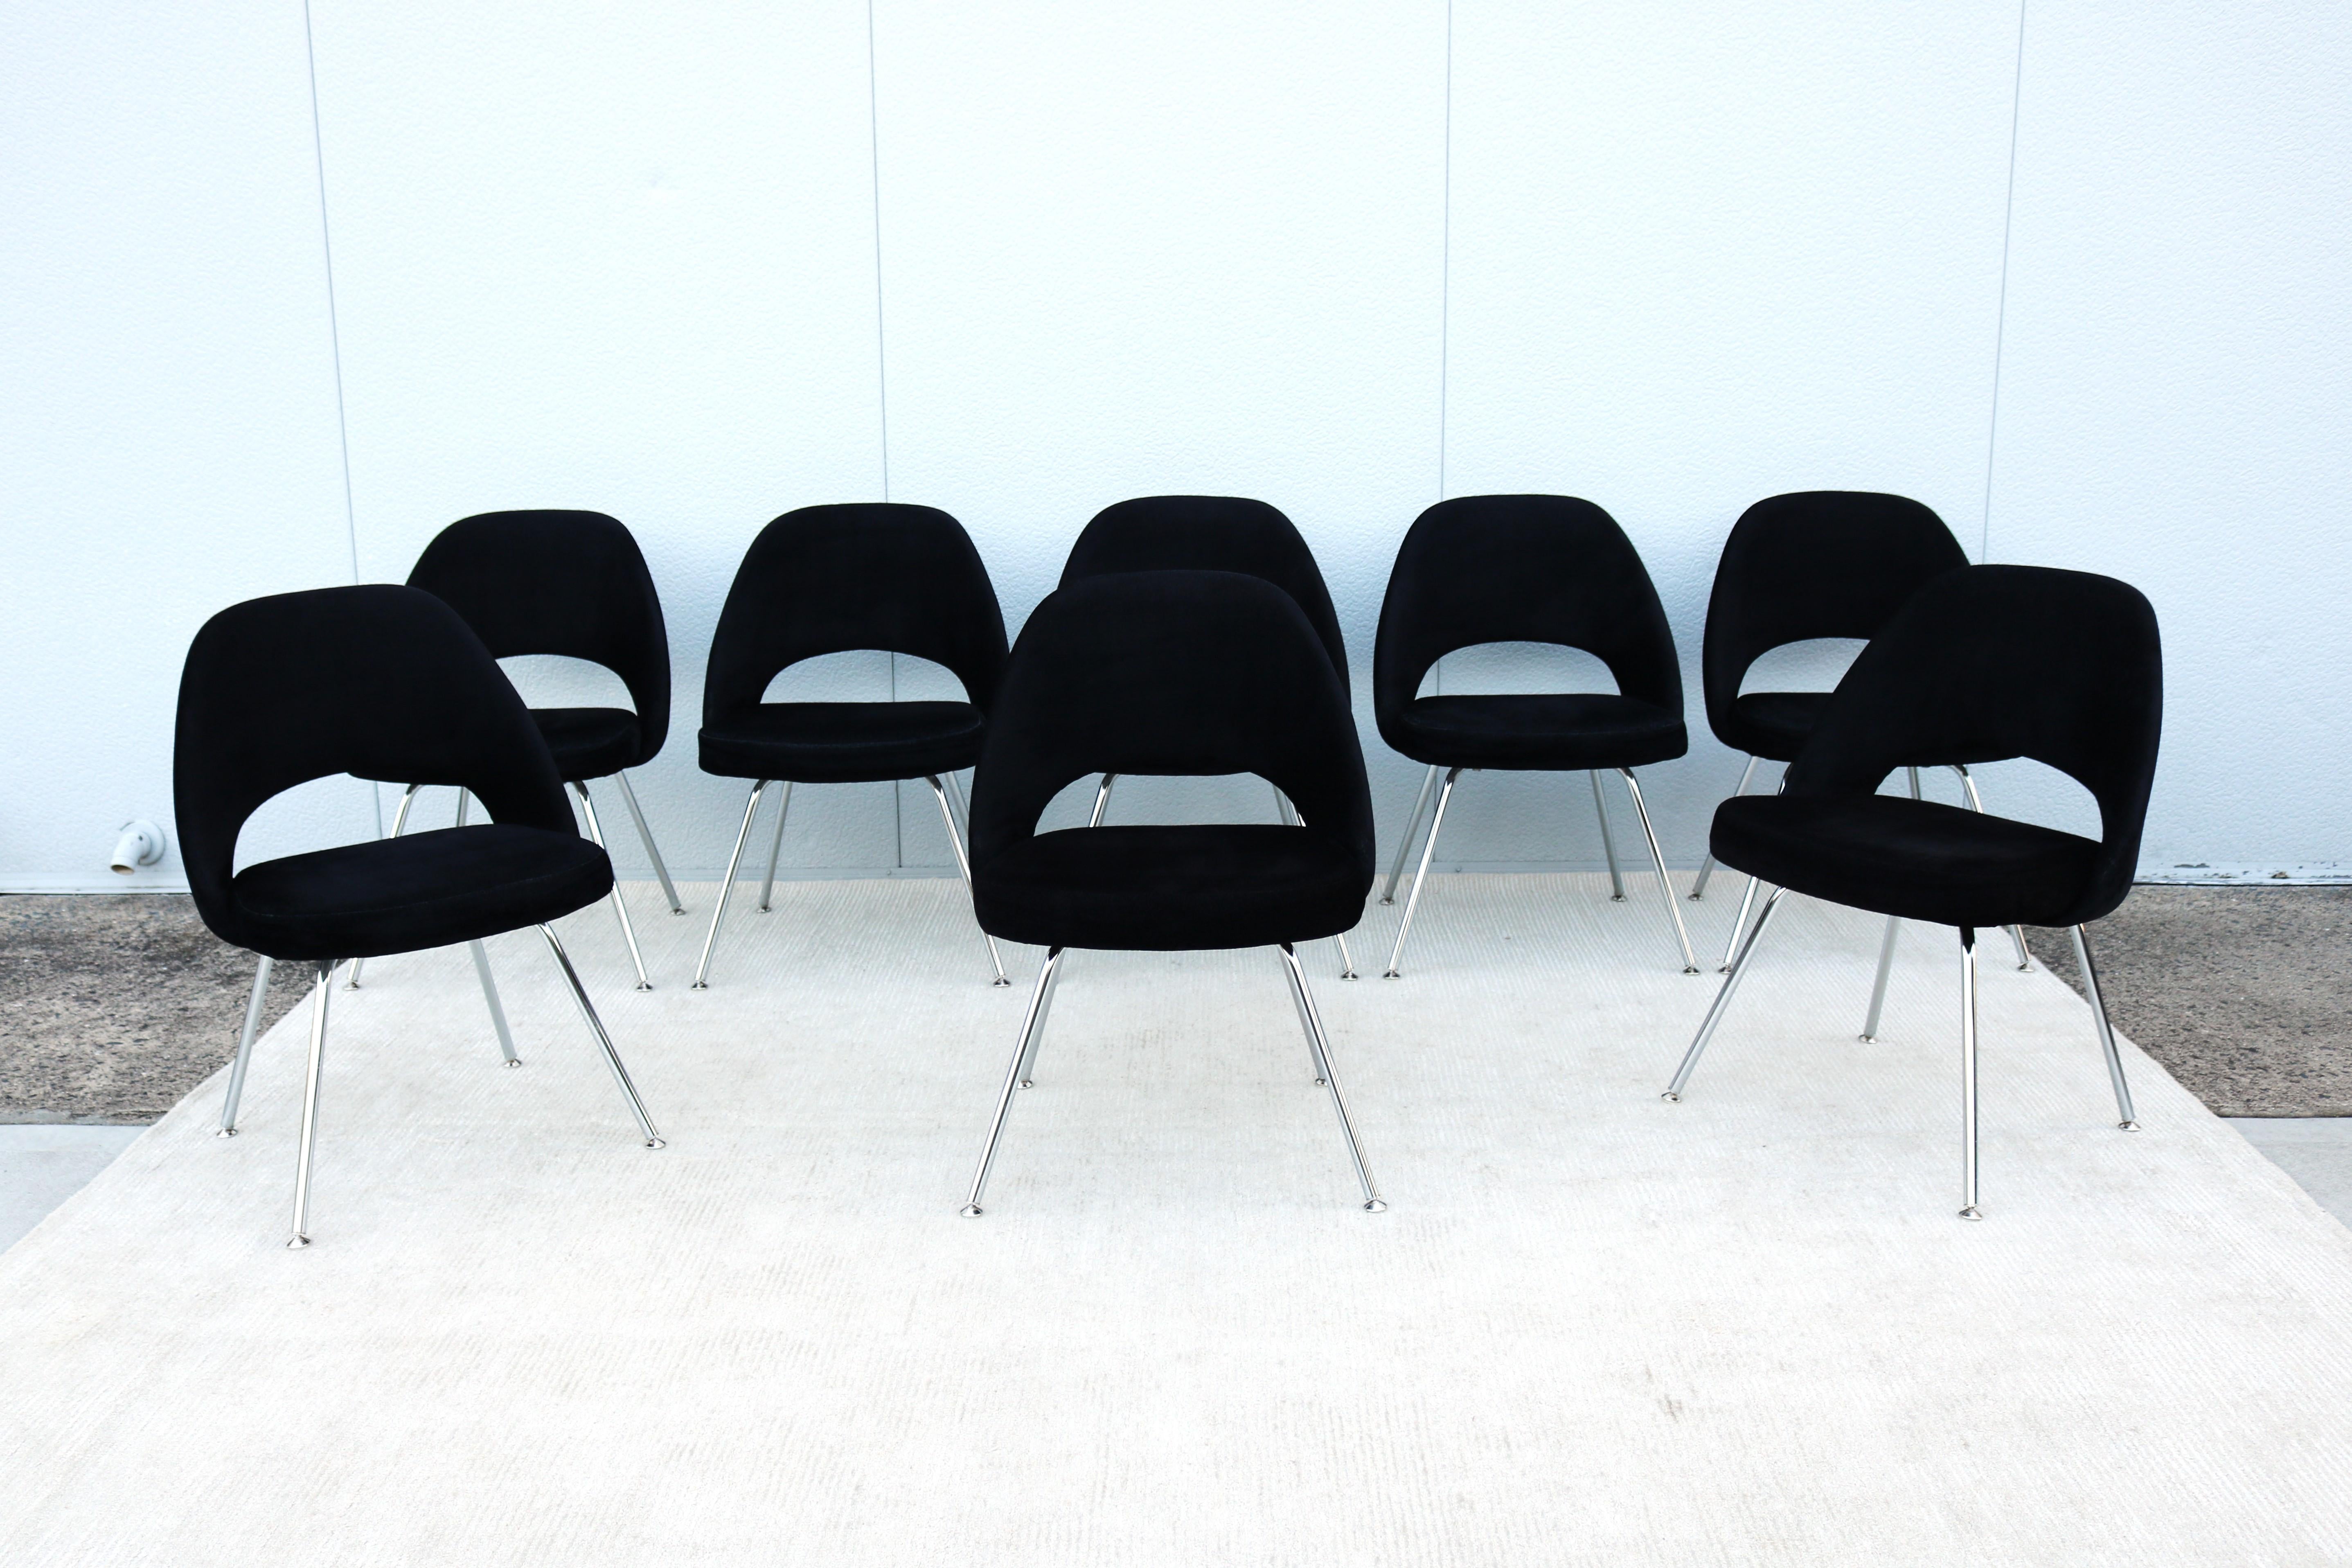 Superbe ensemble de huit fauteuils de direction sans accoudoirs Saarinen de Knoll, authentiquement moderne du milieu du siècle dernier.
L'un des designs les plus populaires de Knoll qui a atteint un confort suprême grâce à la forme de sa coque.
Il a